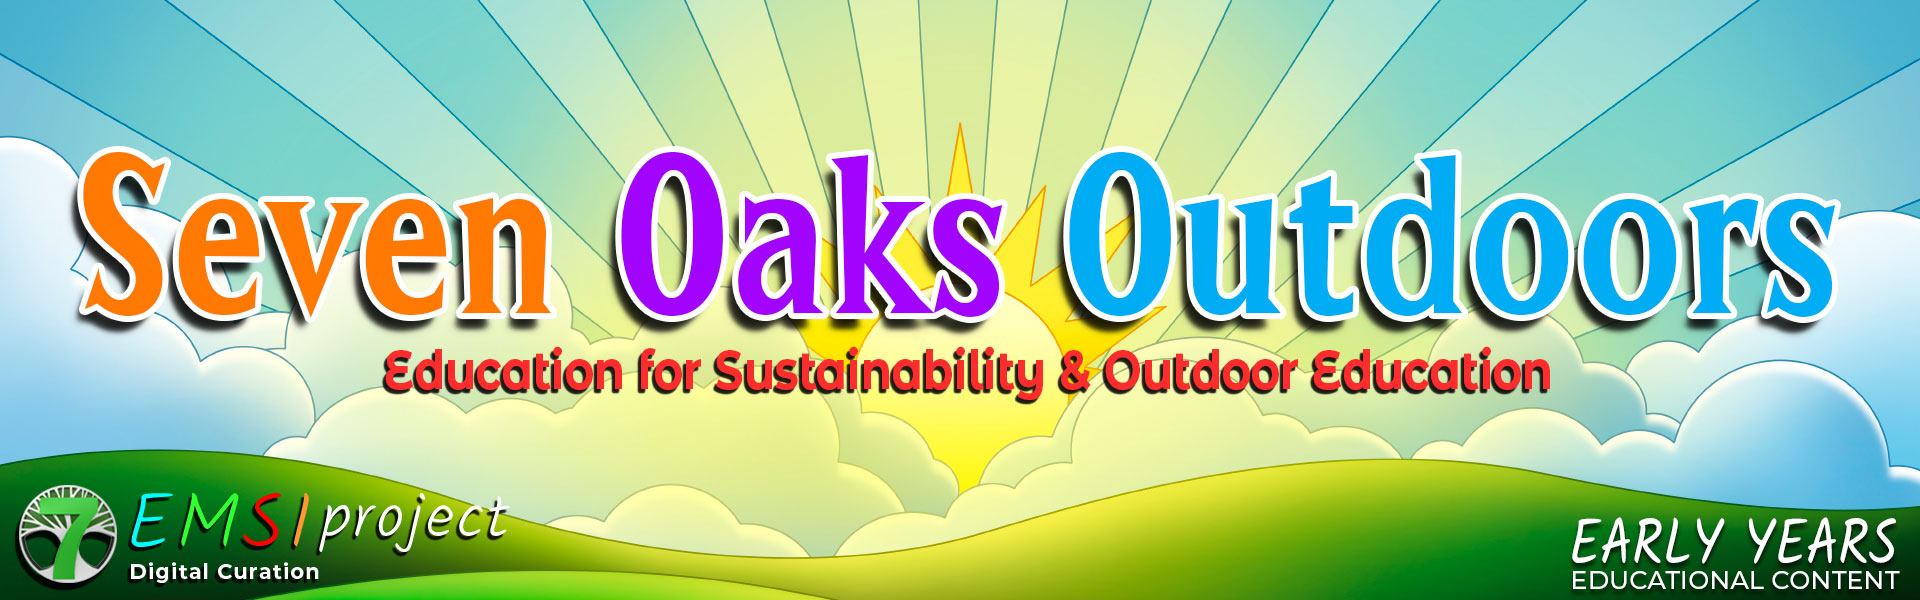 Seven Oaks Outdoors